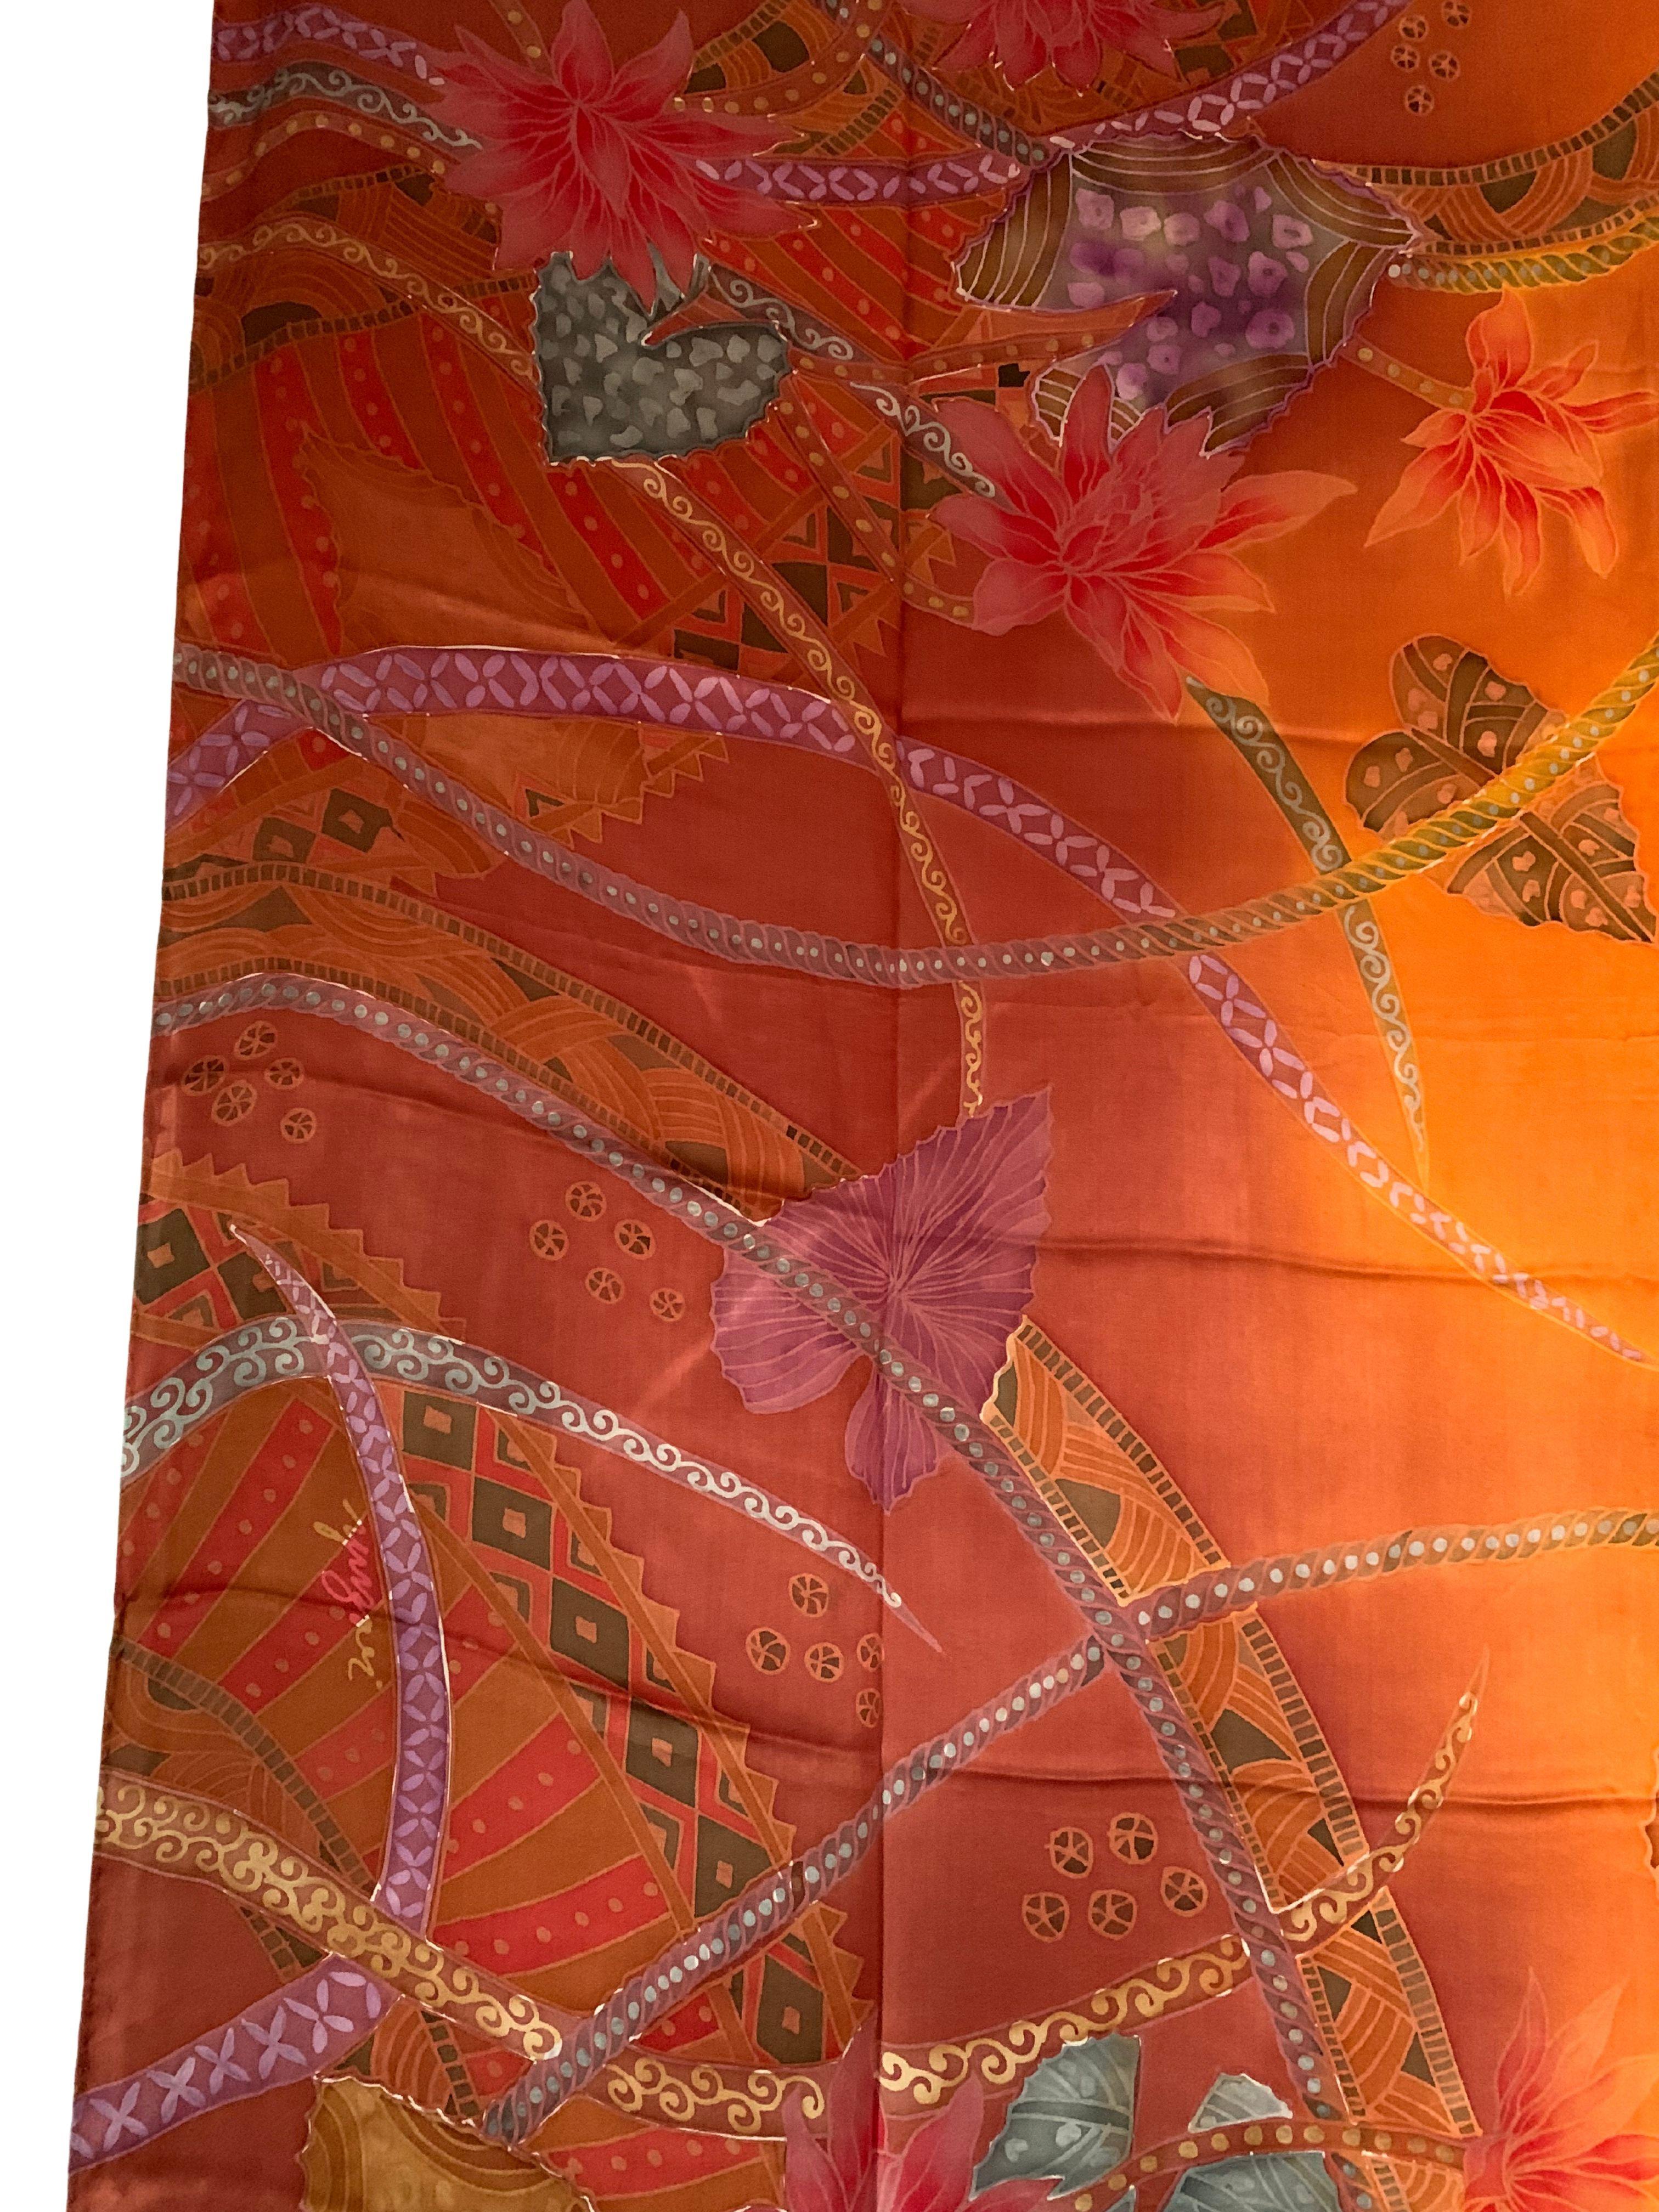 Ein wunderschönes handgefertigtes Seidentextil aus Malaysia mit atemberaubenden Details und Schattierungen. Ein wunderbares Dekorationsobjekt, das Wärme und Farbe in jeden Raum bringt. Dieses Textil wurde von lokalen Webern in Handarbeit